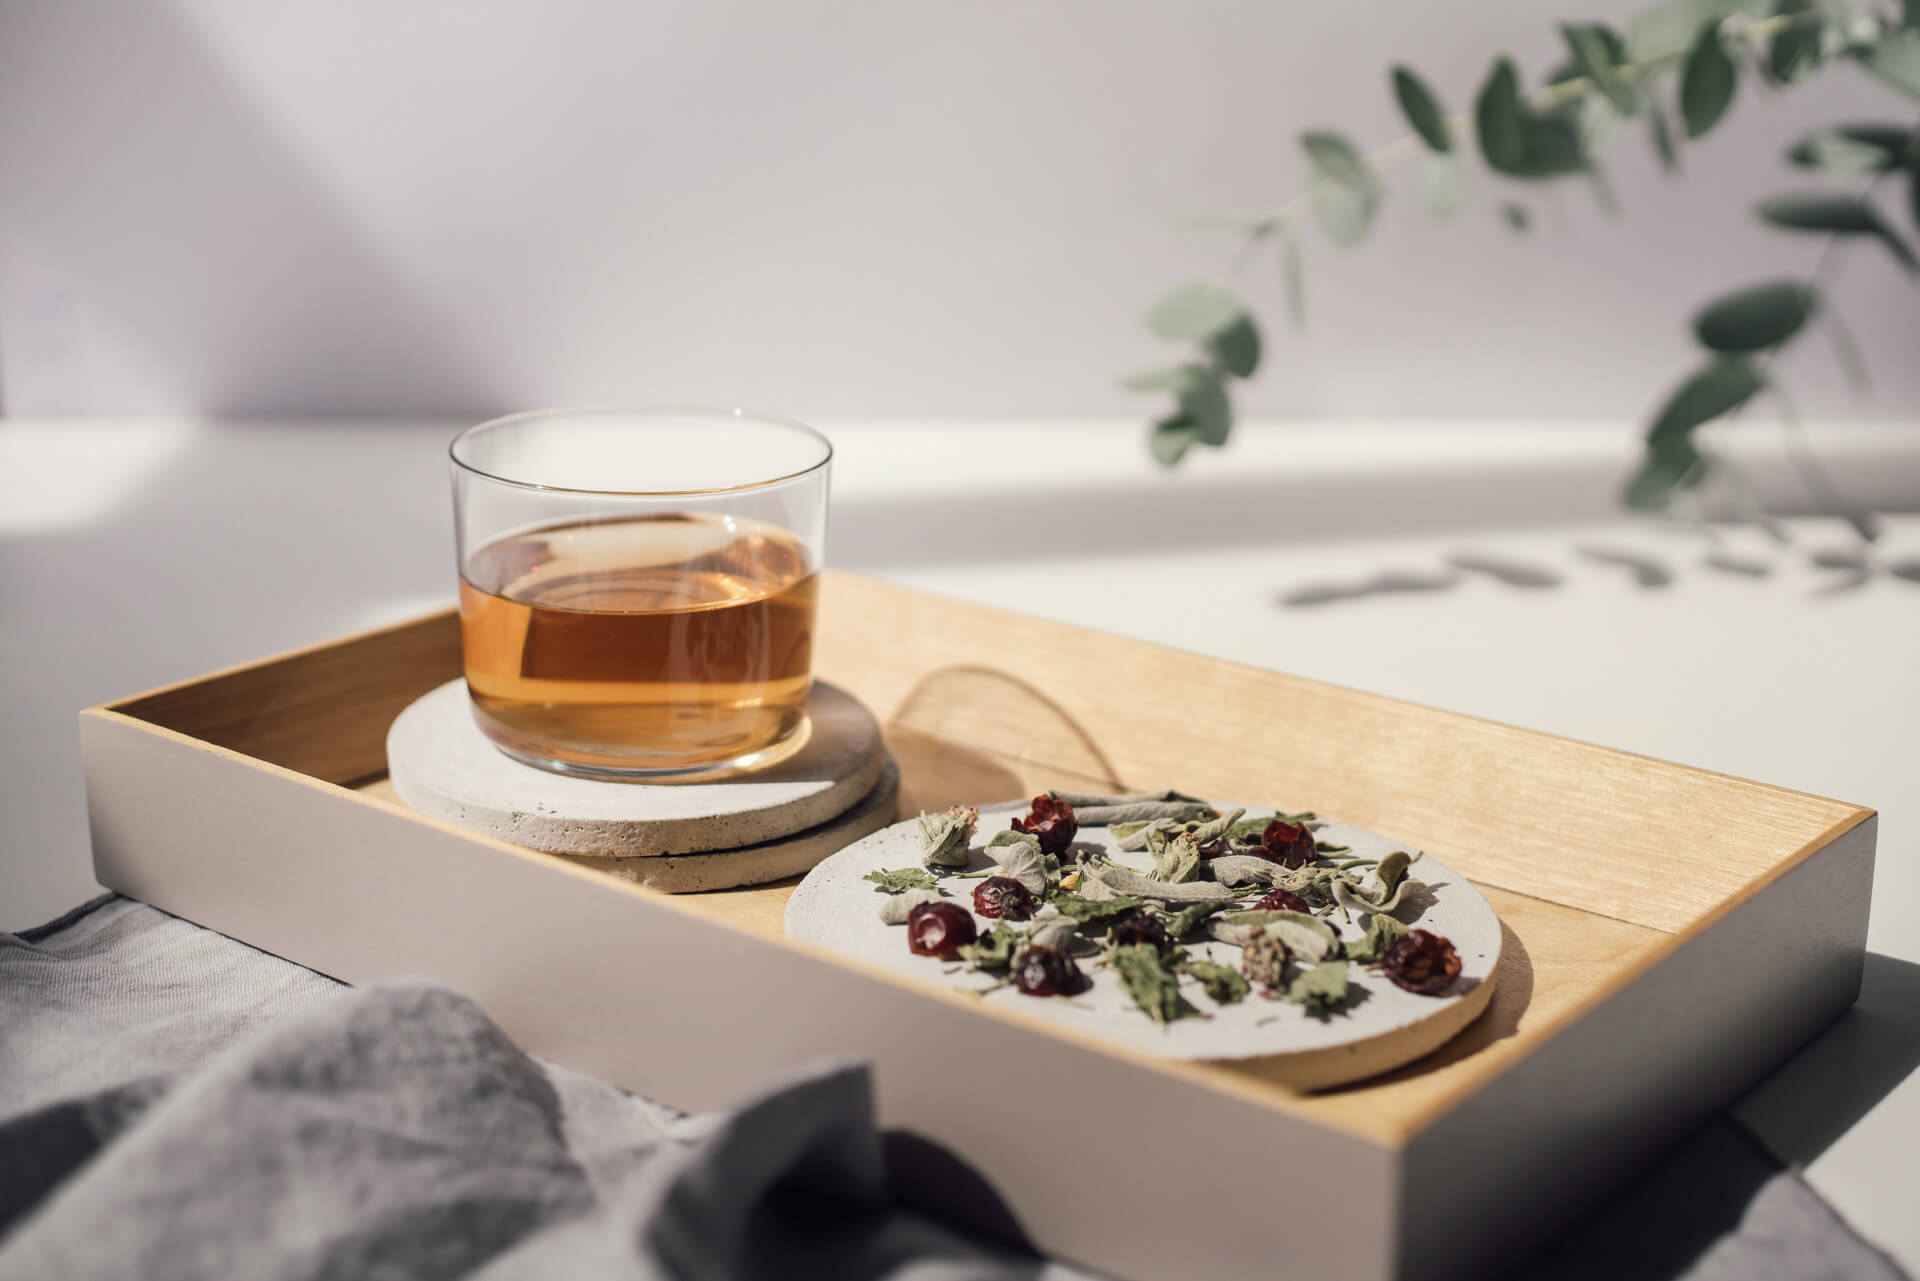 herbal tea rhoeco organic blend artisanal drink loose leaf